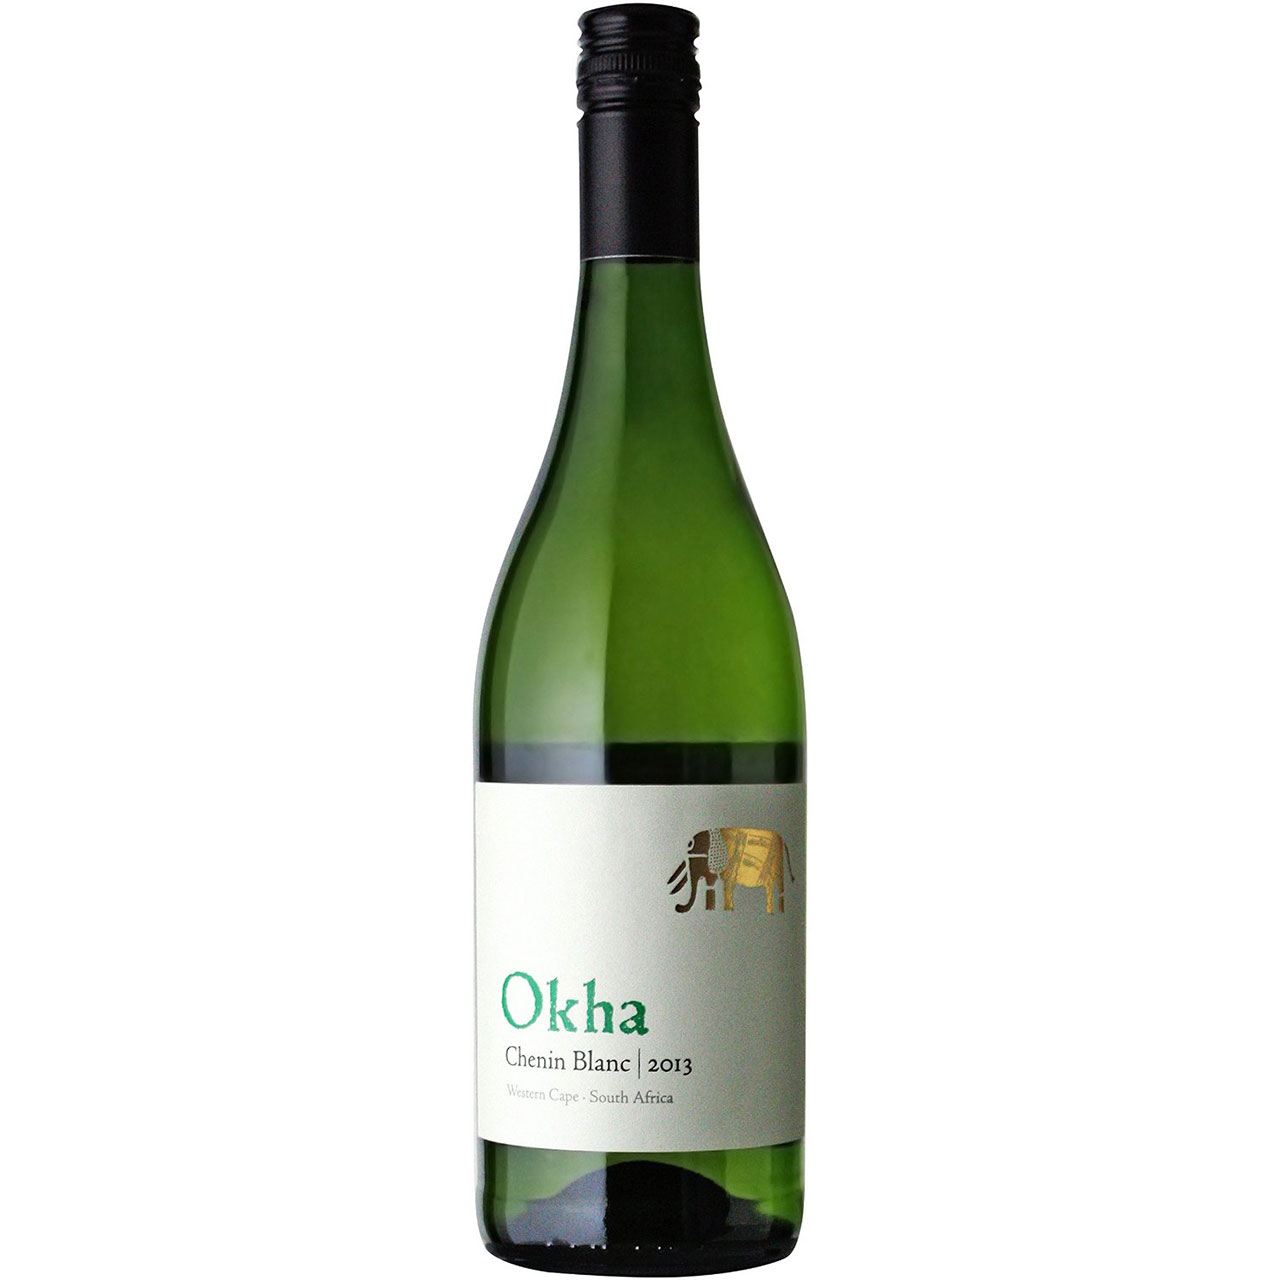 南アフリカの高級ワイン産地ステレンボッシュとパールの両地区にまたがるワイナリー。パパイヤ等トロピカル・フルーツのアロマと新鮮ではじけるような舌触りを持つワインです。 商品名 マン・ヴィントナーズ オーカ シュナン・ブラン 白 750ml 生産地域 南アフリカ 色 白 容量 750ml ブランド マン・ヴィントナーズ アルコール度数 13.23% 葡萄品種 - クール便 夏期推奨 当店について 「酒楽SHOP」は大正5年から続く、台東区の酒販店「ヤマロク」のインターネット通販ショップです 都内最大級の酒専用庫「純米入谷蔵」では蔵元さんから 直送いただいた純米酒を中心としたお酒を、温度管理・鮮度管理を徹底して、お客様のもとへお届けしております。ラッピングも承ります。ギフトやお中元・お歳暮、お世話になった方へ、日本酒・梅酒・焼酎などぜひご利用ください。 ◆こんなギフトシーンに◆ 内祝い・出産内祝い・結婚内祝い・快気内祝い・快気祝い・引出物・引き出物・結婚式・新築内祝い・お返し・入園内祝い・入学内祝い・就職内祝い・成人内祝い・退職内祝い・満中陰志・香典返し・志・法要・年忌・仏事・法事・法事引き出物・仏事法要・お祝い・御祝い・一周忌・三回忌・七回忌・出産祝い・結婚祝い・新築祝い・入園祝い・入学祝い・就職祝い・成人祝い・退職祝い・退職記念・お中元・御中元・暑中見舞い・暑中見舞・残暑見舞い・残暑見舞・お歳暮・御歳暮・寒中見舞い・お年賀・御年賀・正月・お正月・年越し・年末・年始・粗品・プレゼント・お見舞い・記念品・賞品・景品・二次会・ゴルフコンペ・ノベルティ・母の日・父の日・敬老の日・敬老祝い・お誕生日お祝い・バースデイ・クリスマス・クリスマスプレゼント・バレンタインデー・ホワイトデー・結婚記念日・贈り物・ギフト・ギフトセット・贈り物・お礼・御礼・手土産・お土産・お遣い物・ご挨拶・ご自宅用・贈答品・ご贈答・記念日・記念品・誕生日・誕生祝い・結婚記念日・引越し祝い・転居・昇進・栄転・感謝・還暦祝・華寿・緑寿・古希・喜寿・傘寿・米寿・卒寿・白寿・上寿・歓送迎会・歓迎会・送迎会・粗品・卒業祝い・成人式・成人の日・お見舞い・開店祝い・開業祝い・周年・イベント・協賛・ビジネス・法人・お彼岸・お返し・お酒・日本酒・地酒・芋焼酎・麦焼酎・黒糖焼酎・梅酒・和リキュール・仏事・お盆・新盆・初盆・御供え・お供え・パーティー・合コン・お見合い・花見・お花見・こだわり・蔵元直送・直送・ランキング・売れ筋・杜氏・クチコミ・ポイント・詰め合わせ・詰め合せセット・飲み比べ・飲み比べセット・お試し・おためし・セット・グルメ・お取り寄せ・酒楽SHOP